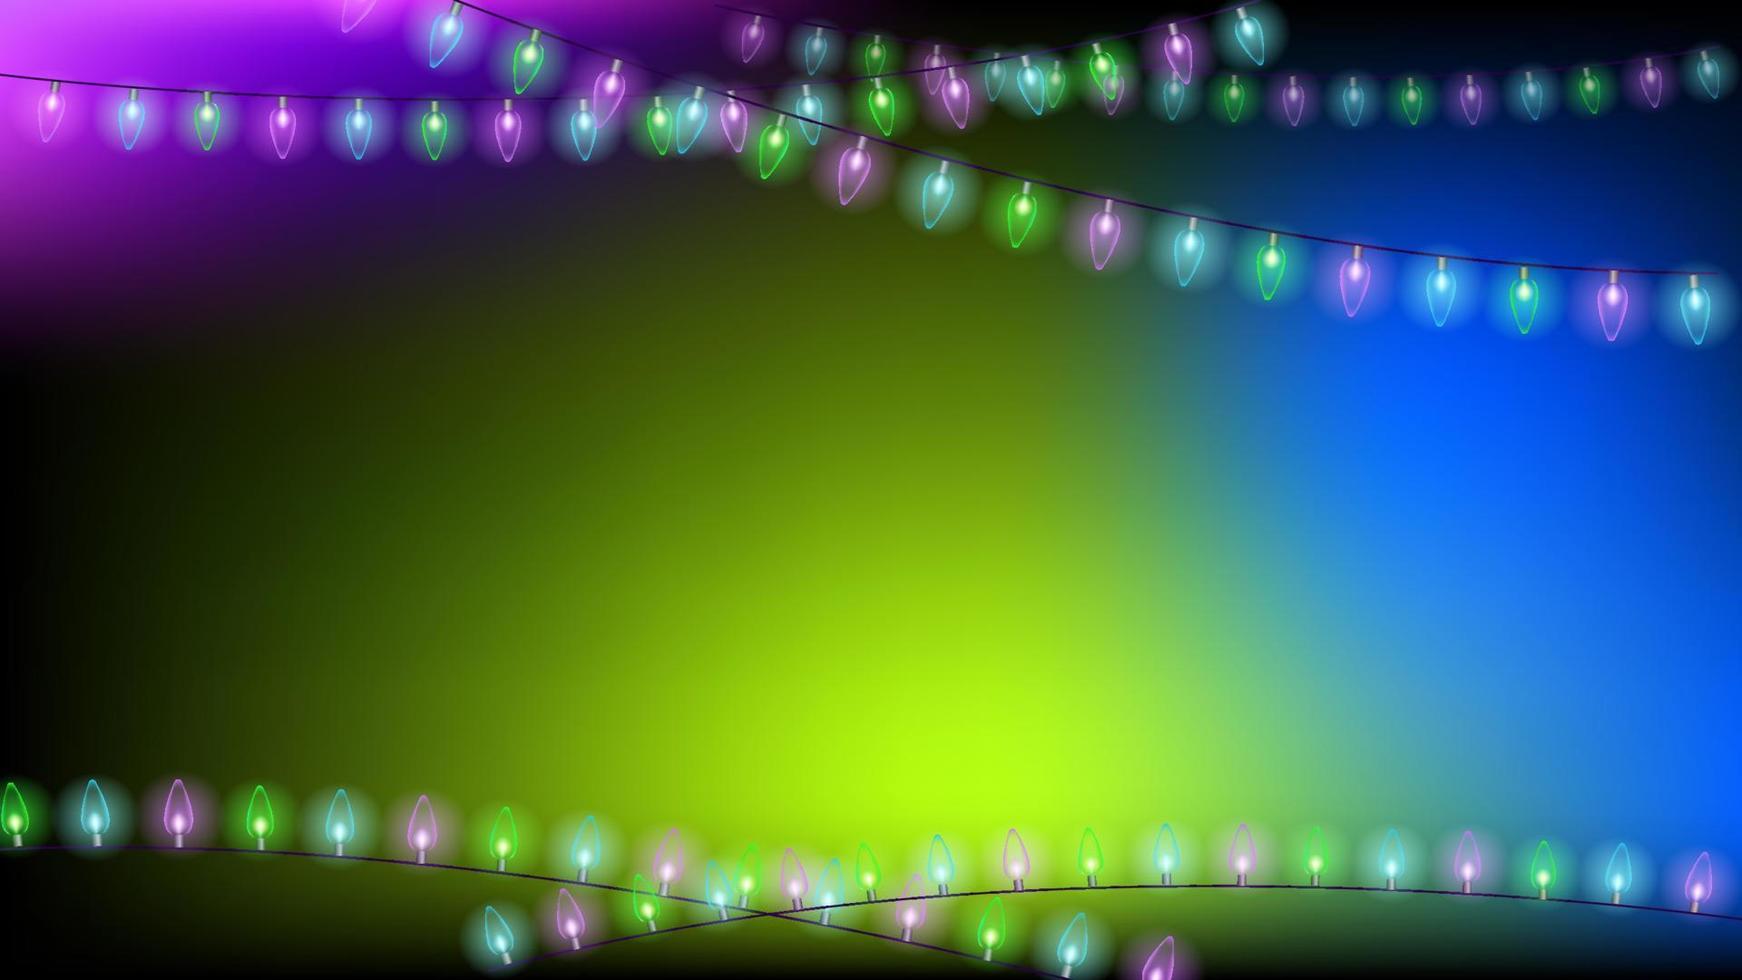 fond de noël bleu et vert avec des lumières. arrière-plan avec une place pour le texte. illustration vectorielle vecteur